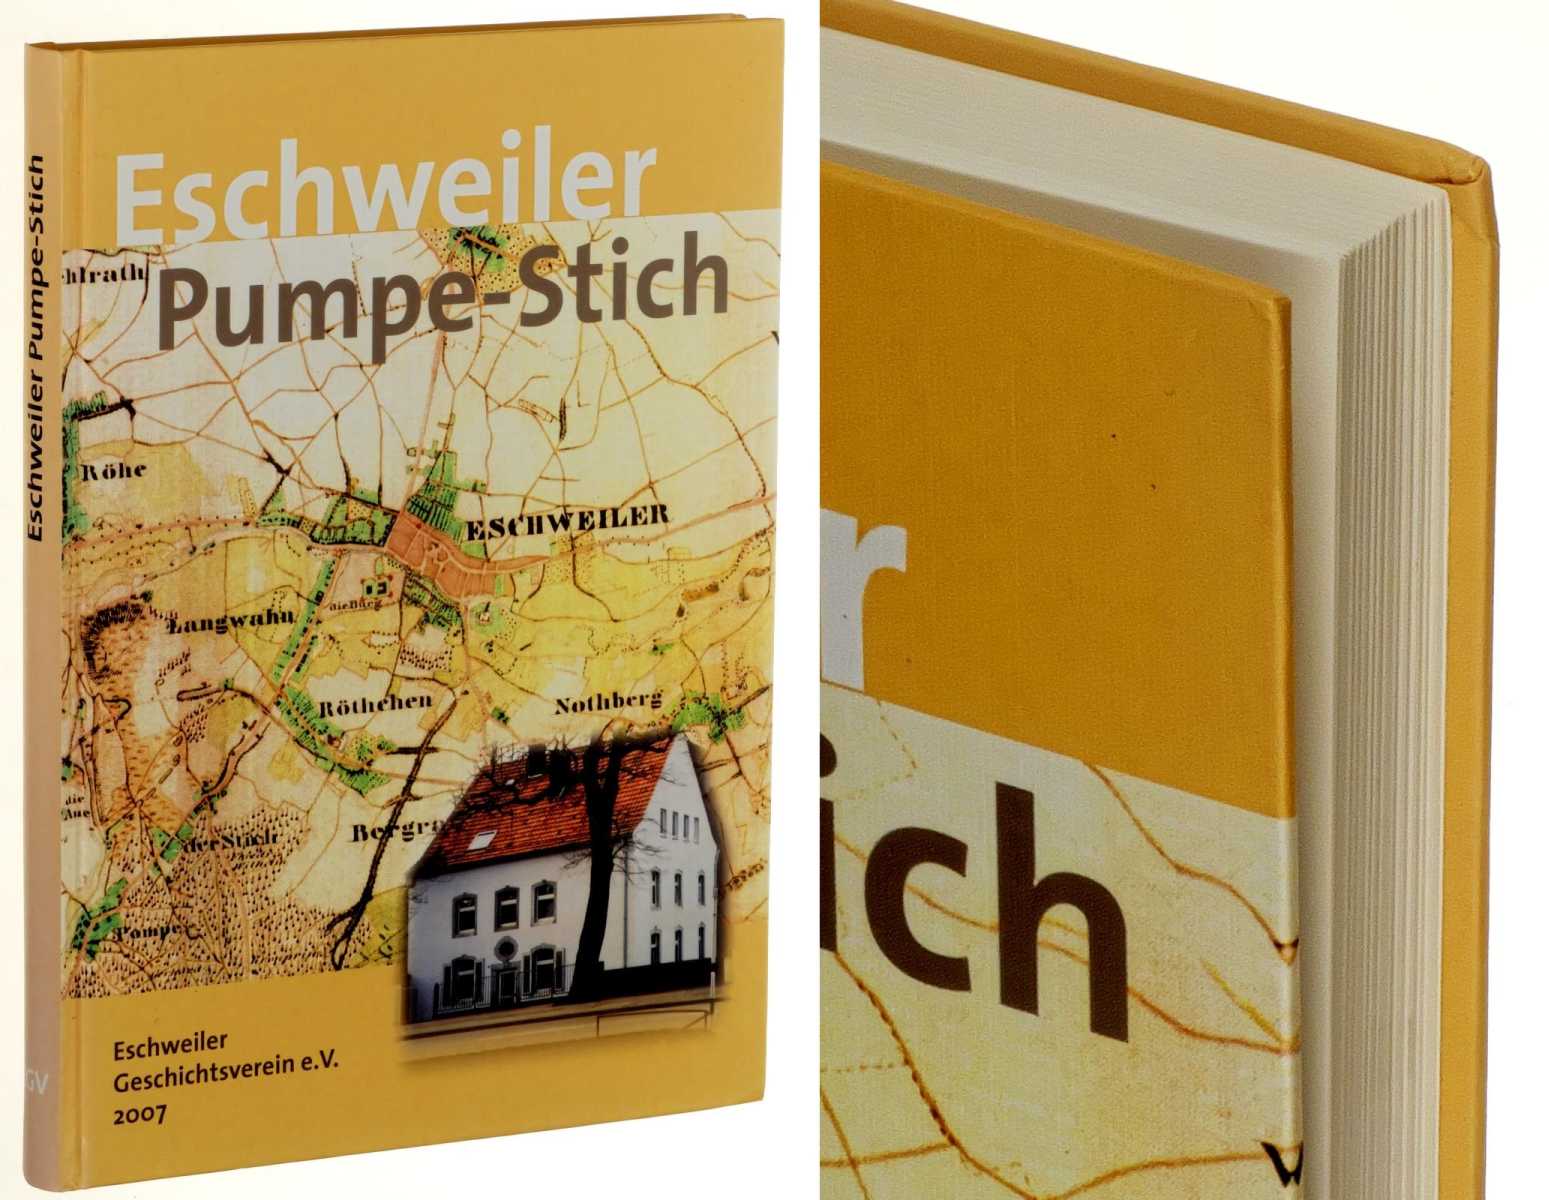   Eschweiler Pumpe-Stich. Heimatbuch über einen Stadtteil. 